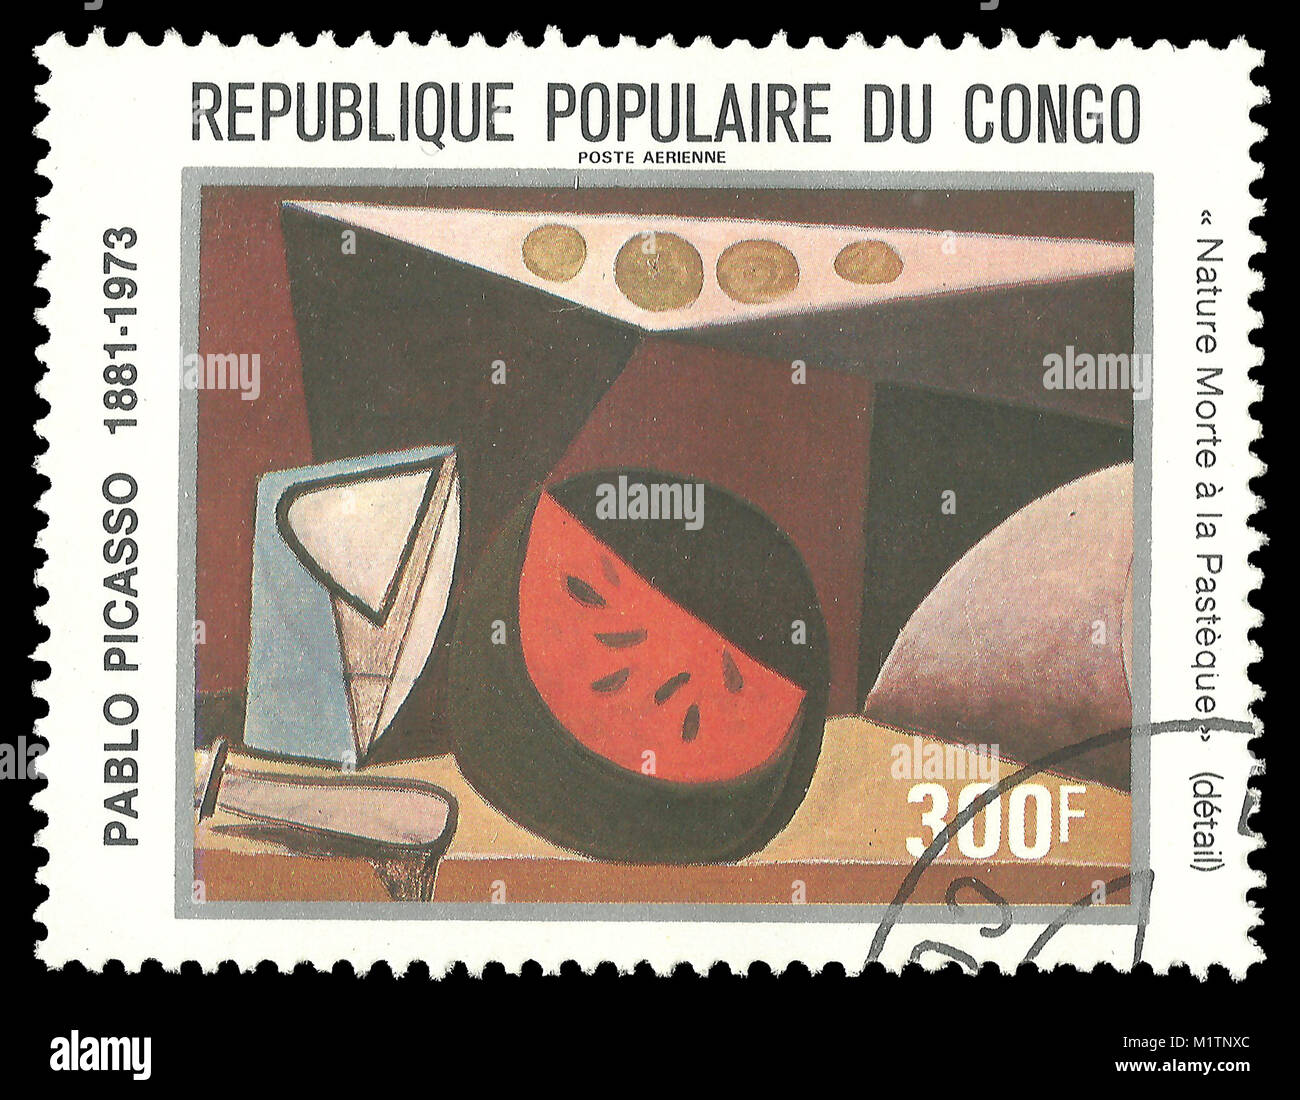 Congo - timbres en 1981 : La couleur de l'édition du centenaire de l'anniversaire de Pablo Picasso, peinture Nature morte avec Pasteque Banque D'Images